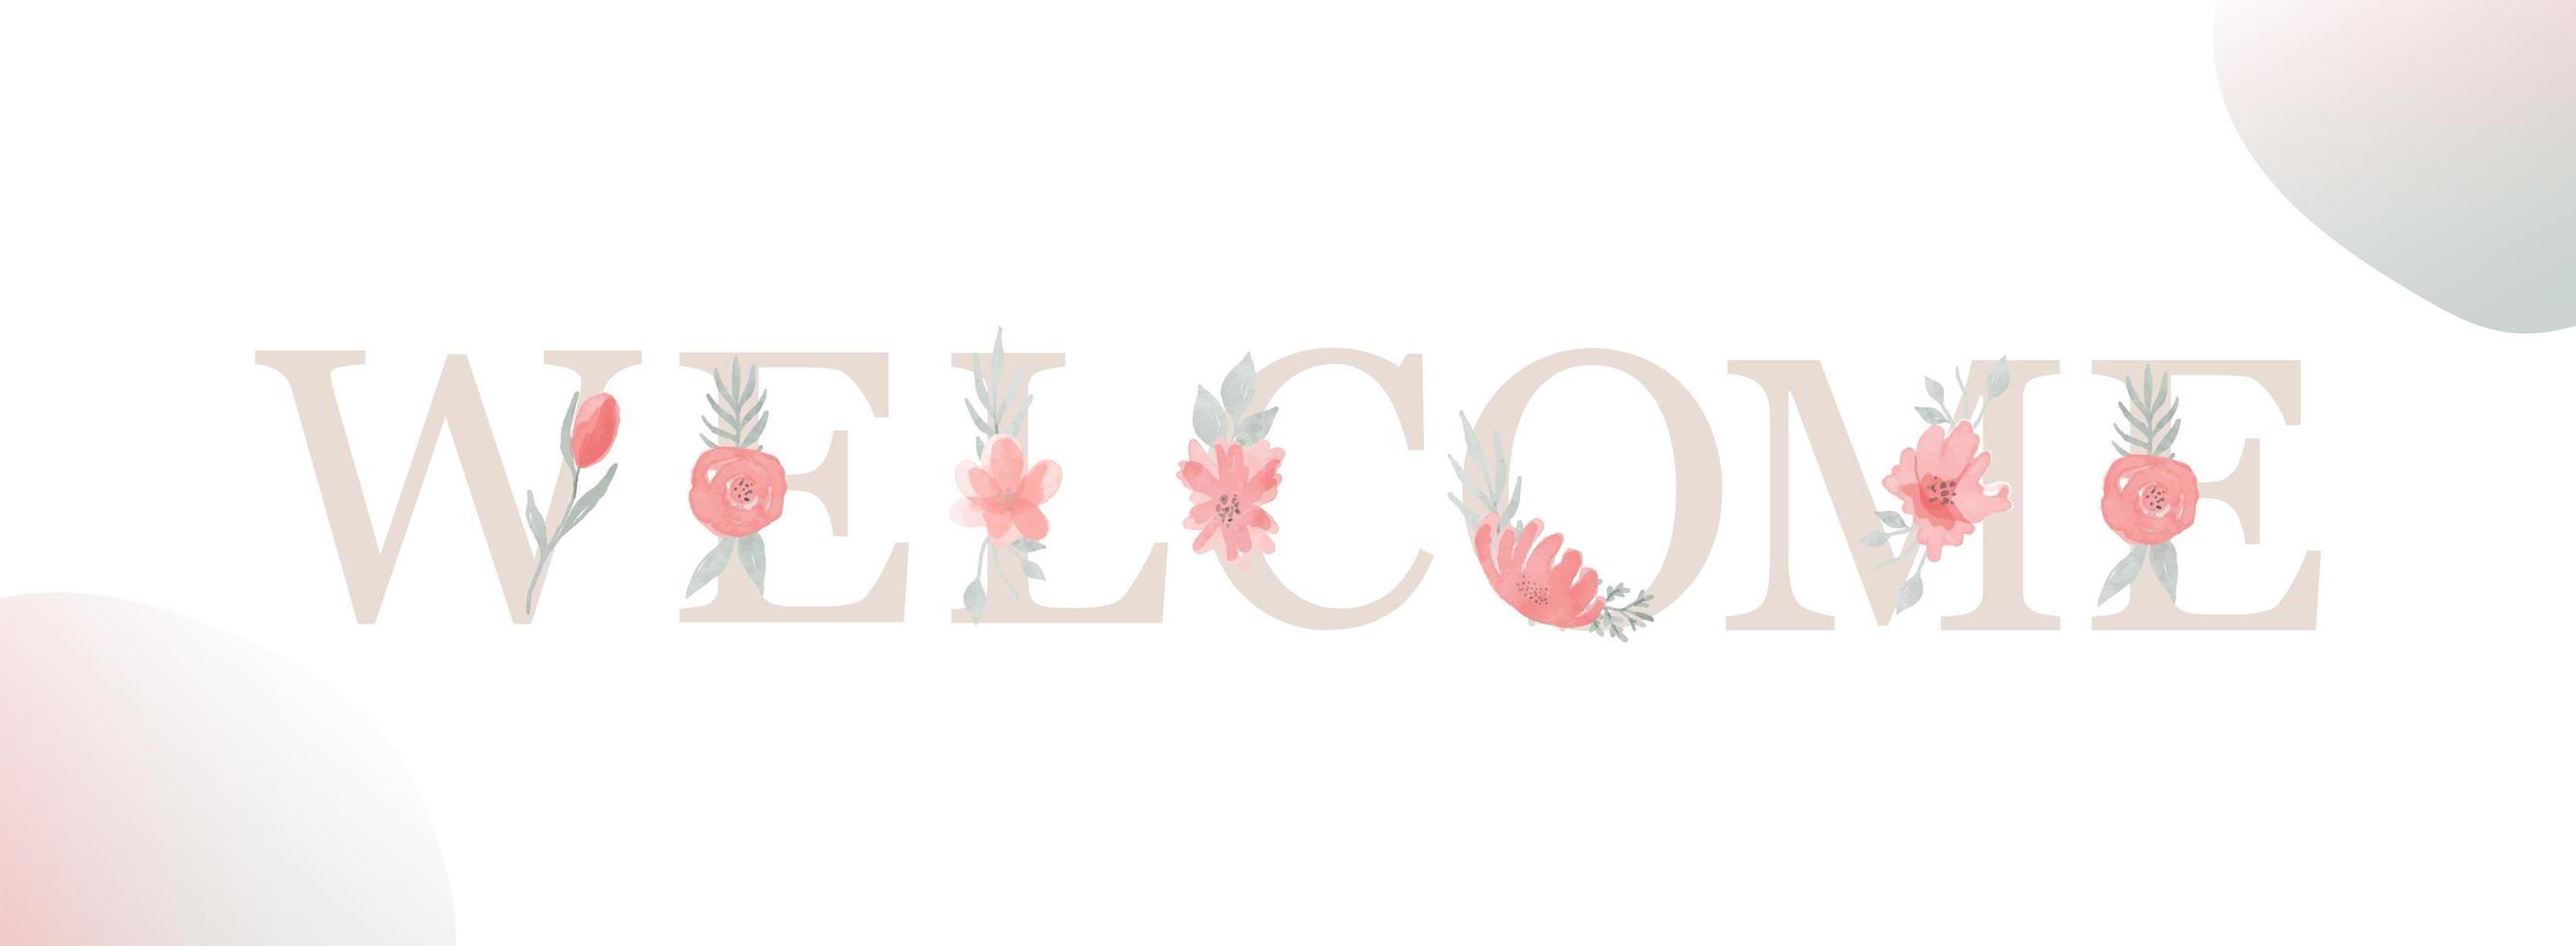 welkom. inscriptie met letter, aquarel bloem en blad. vector